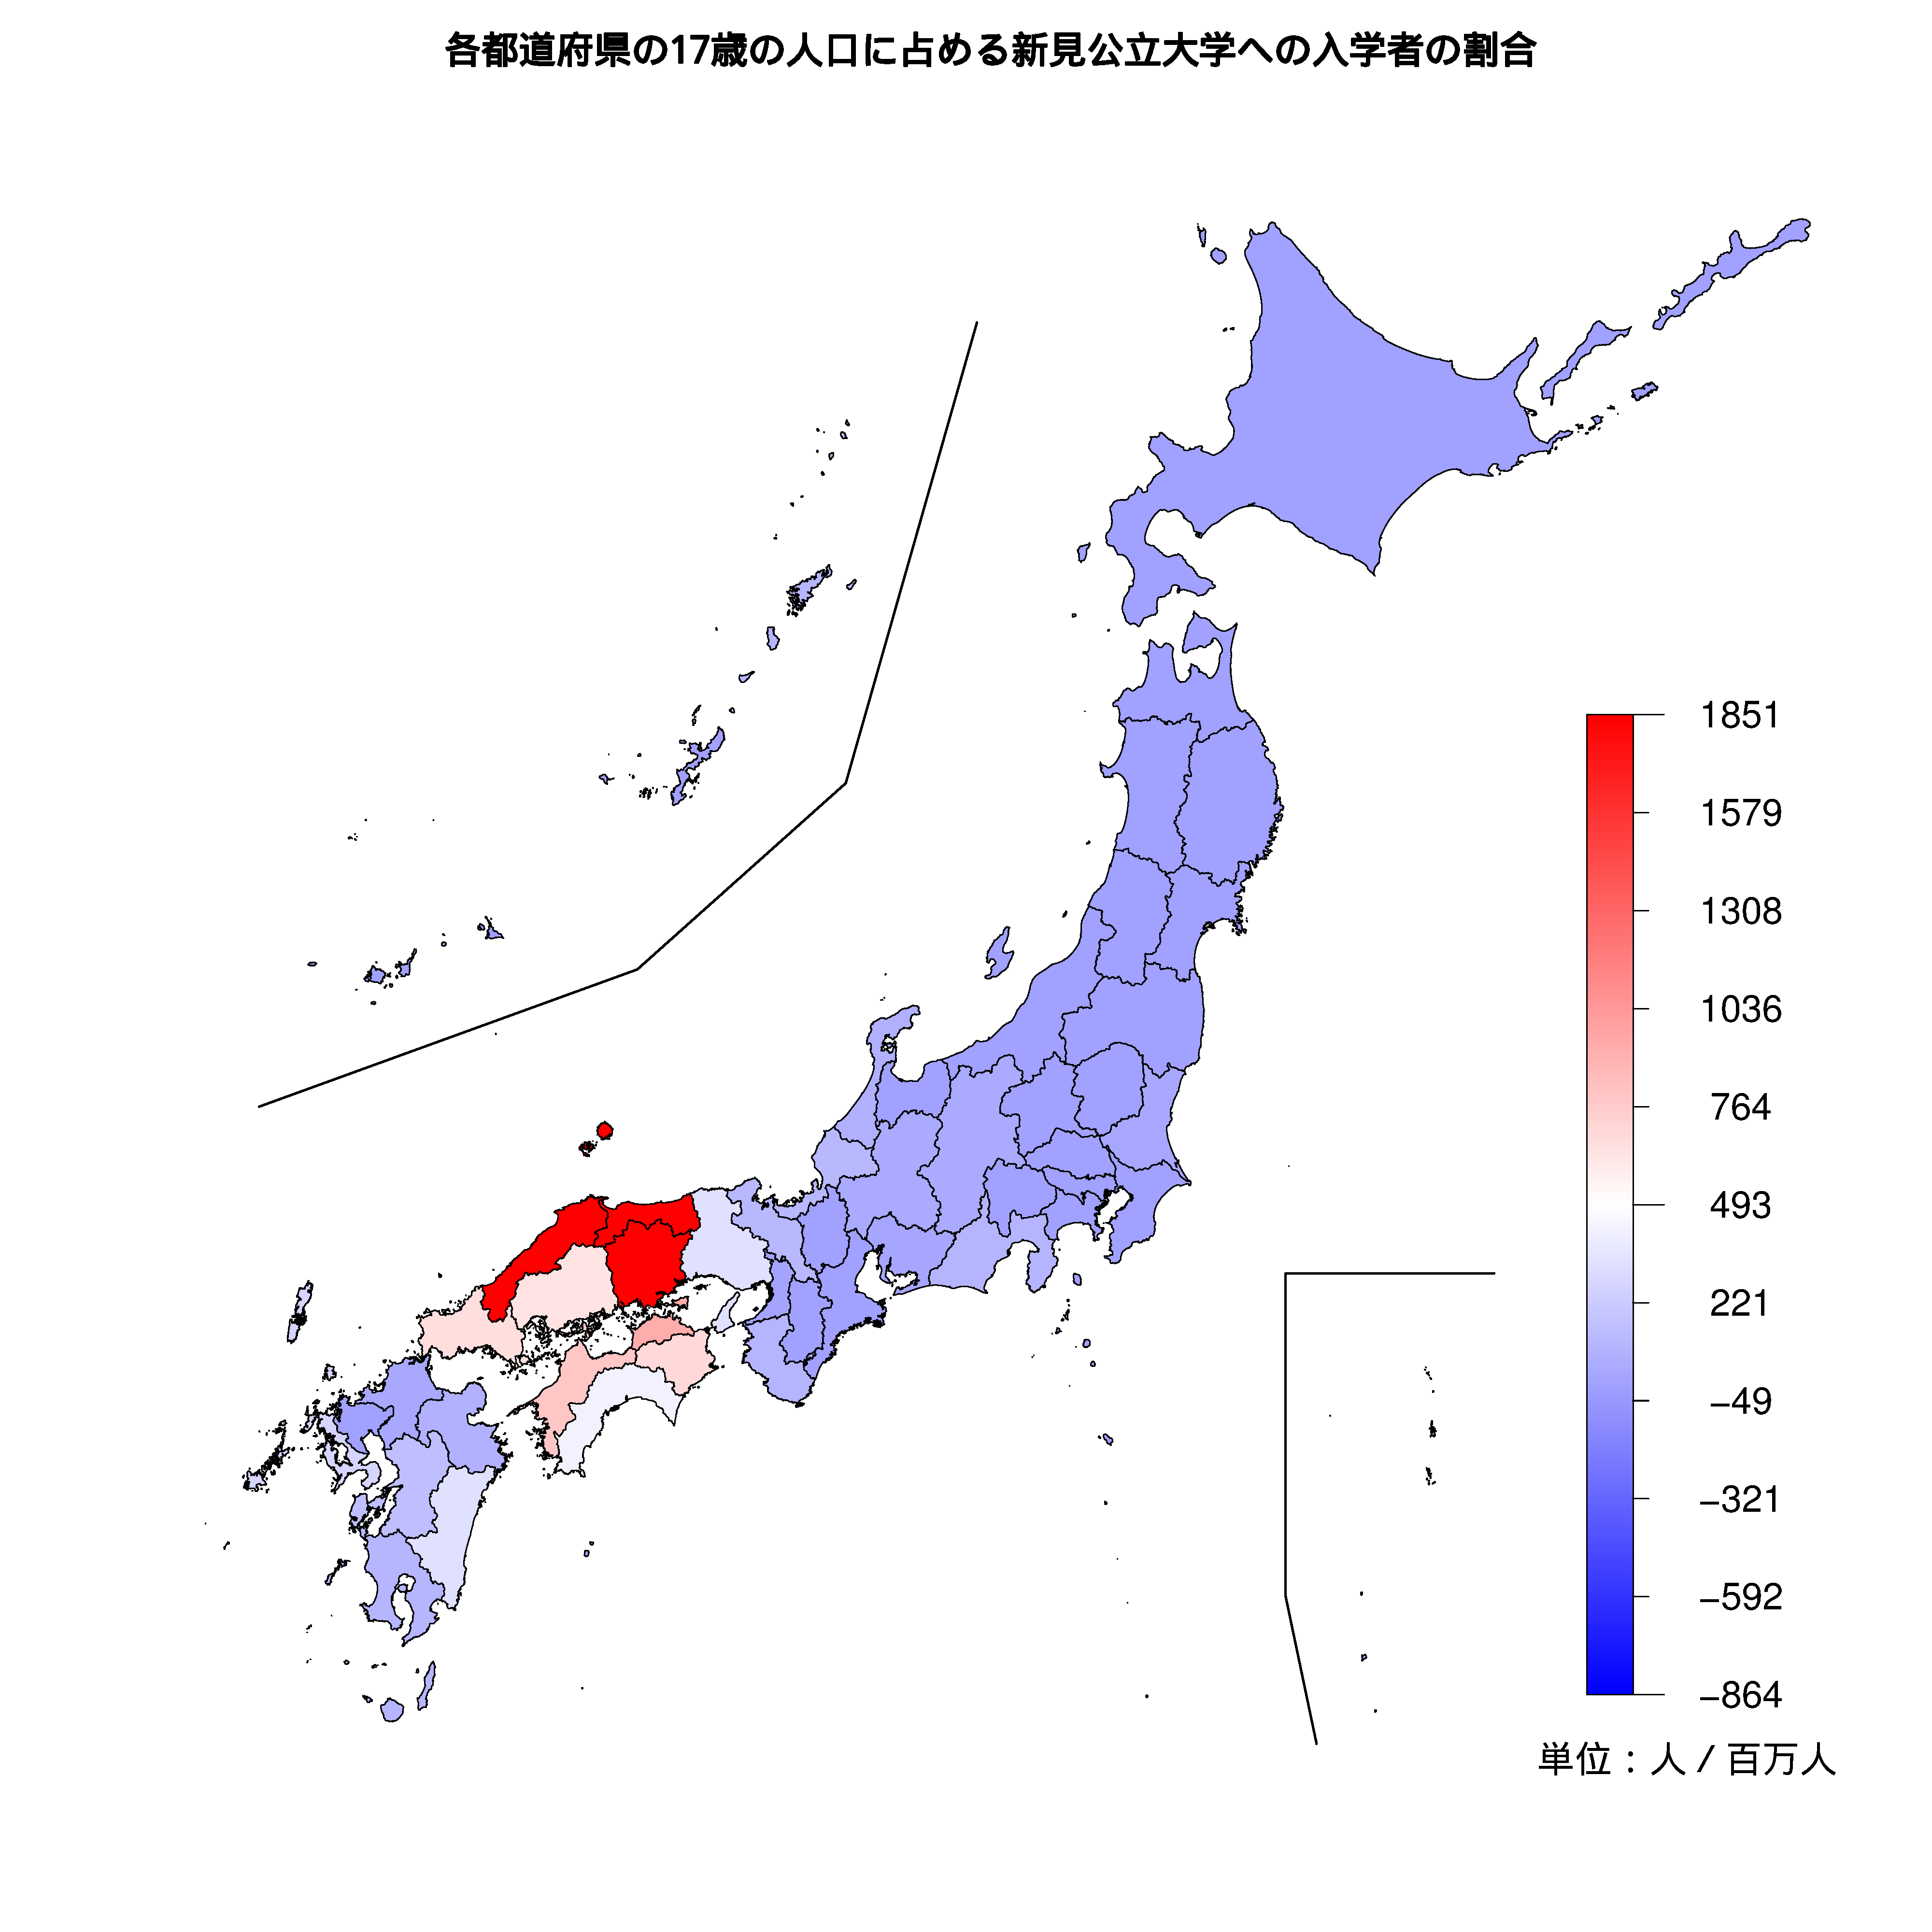 新見公立大学への入学者が多い都道府県の色分け地図